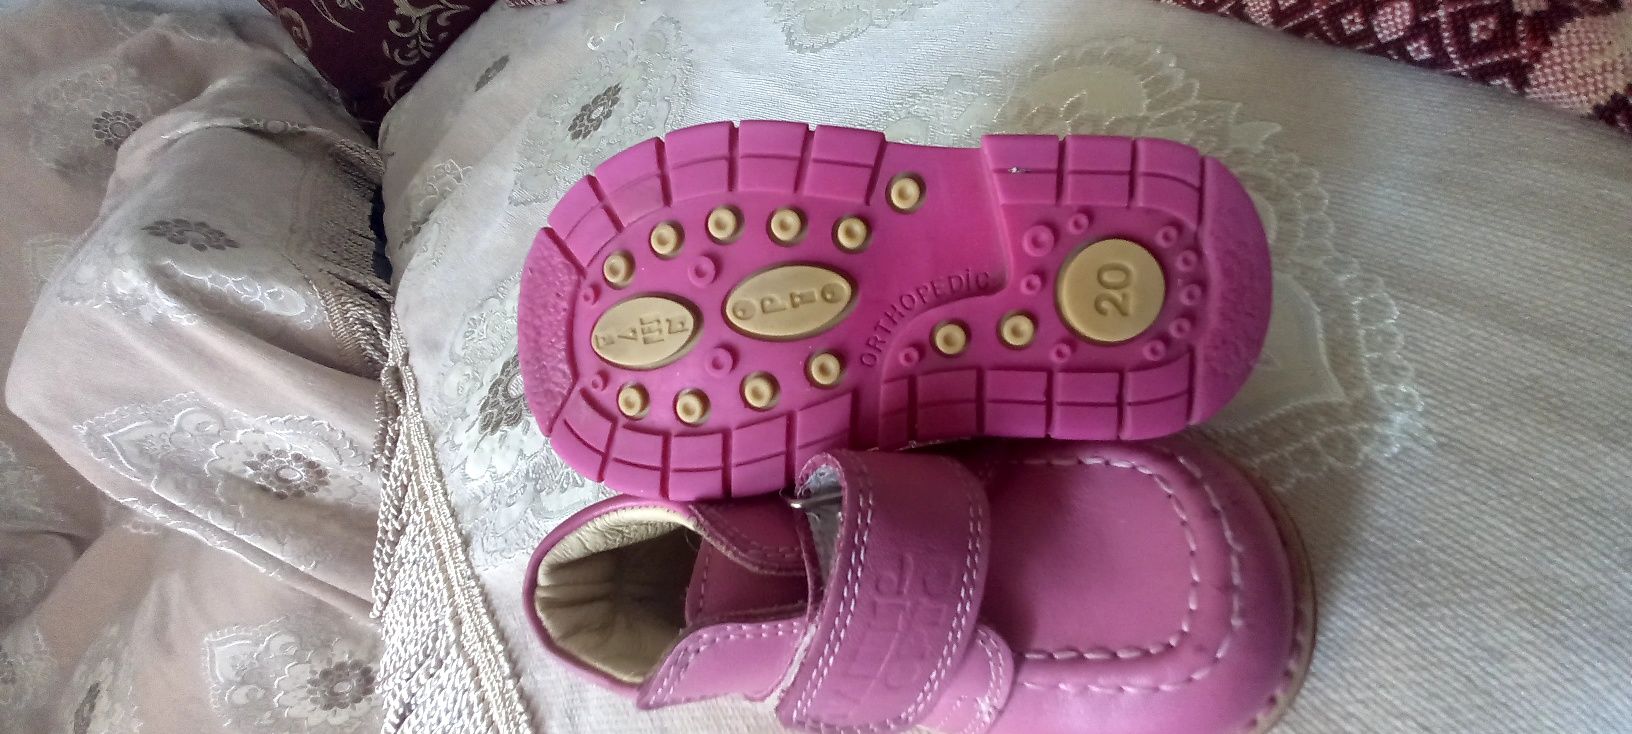 Ортапедическая Детская обувь  для девочек смотрите фото пишите  звонит